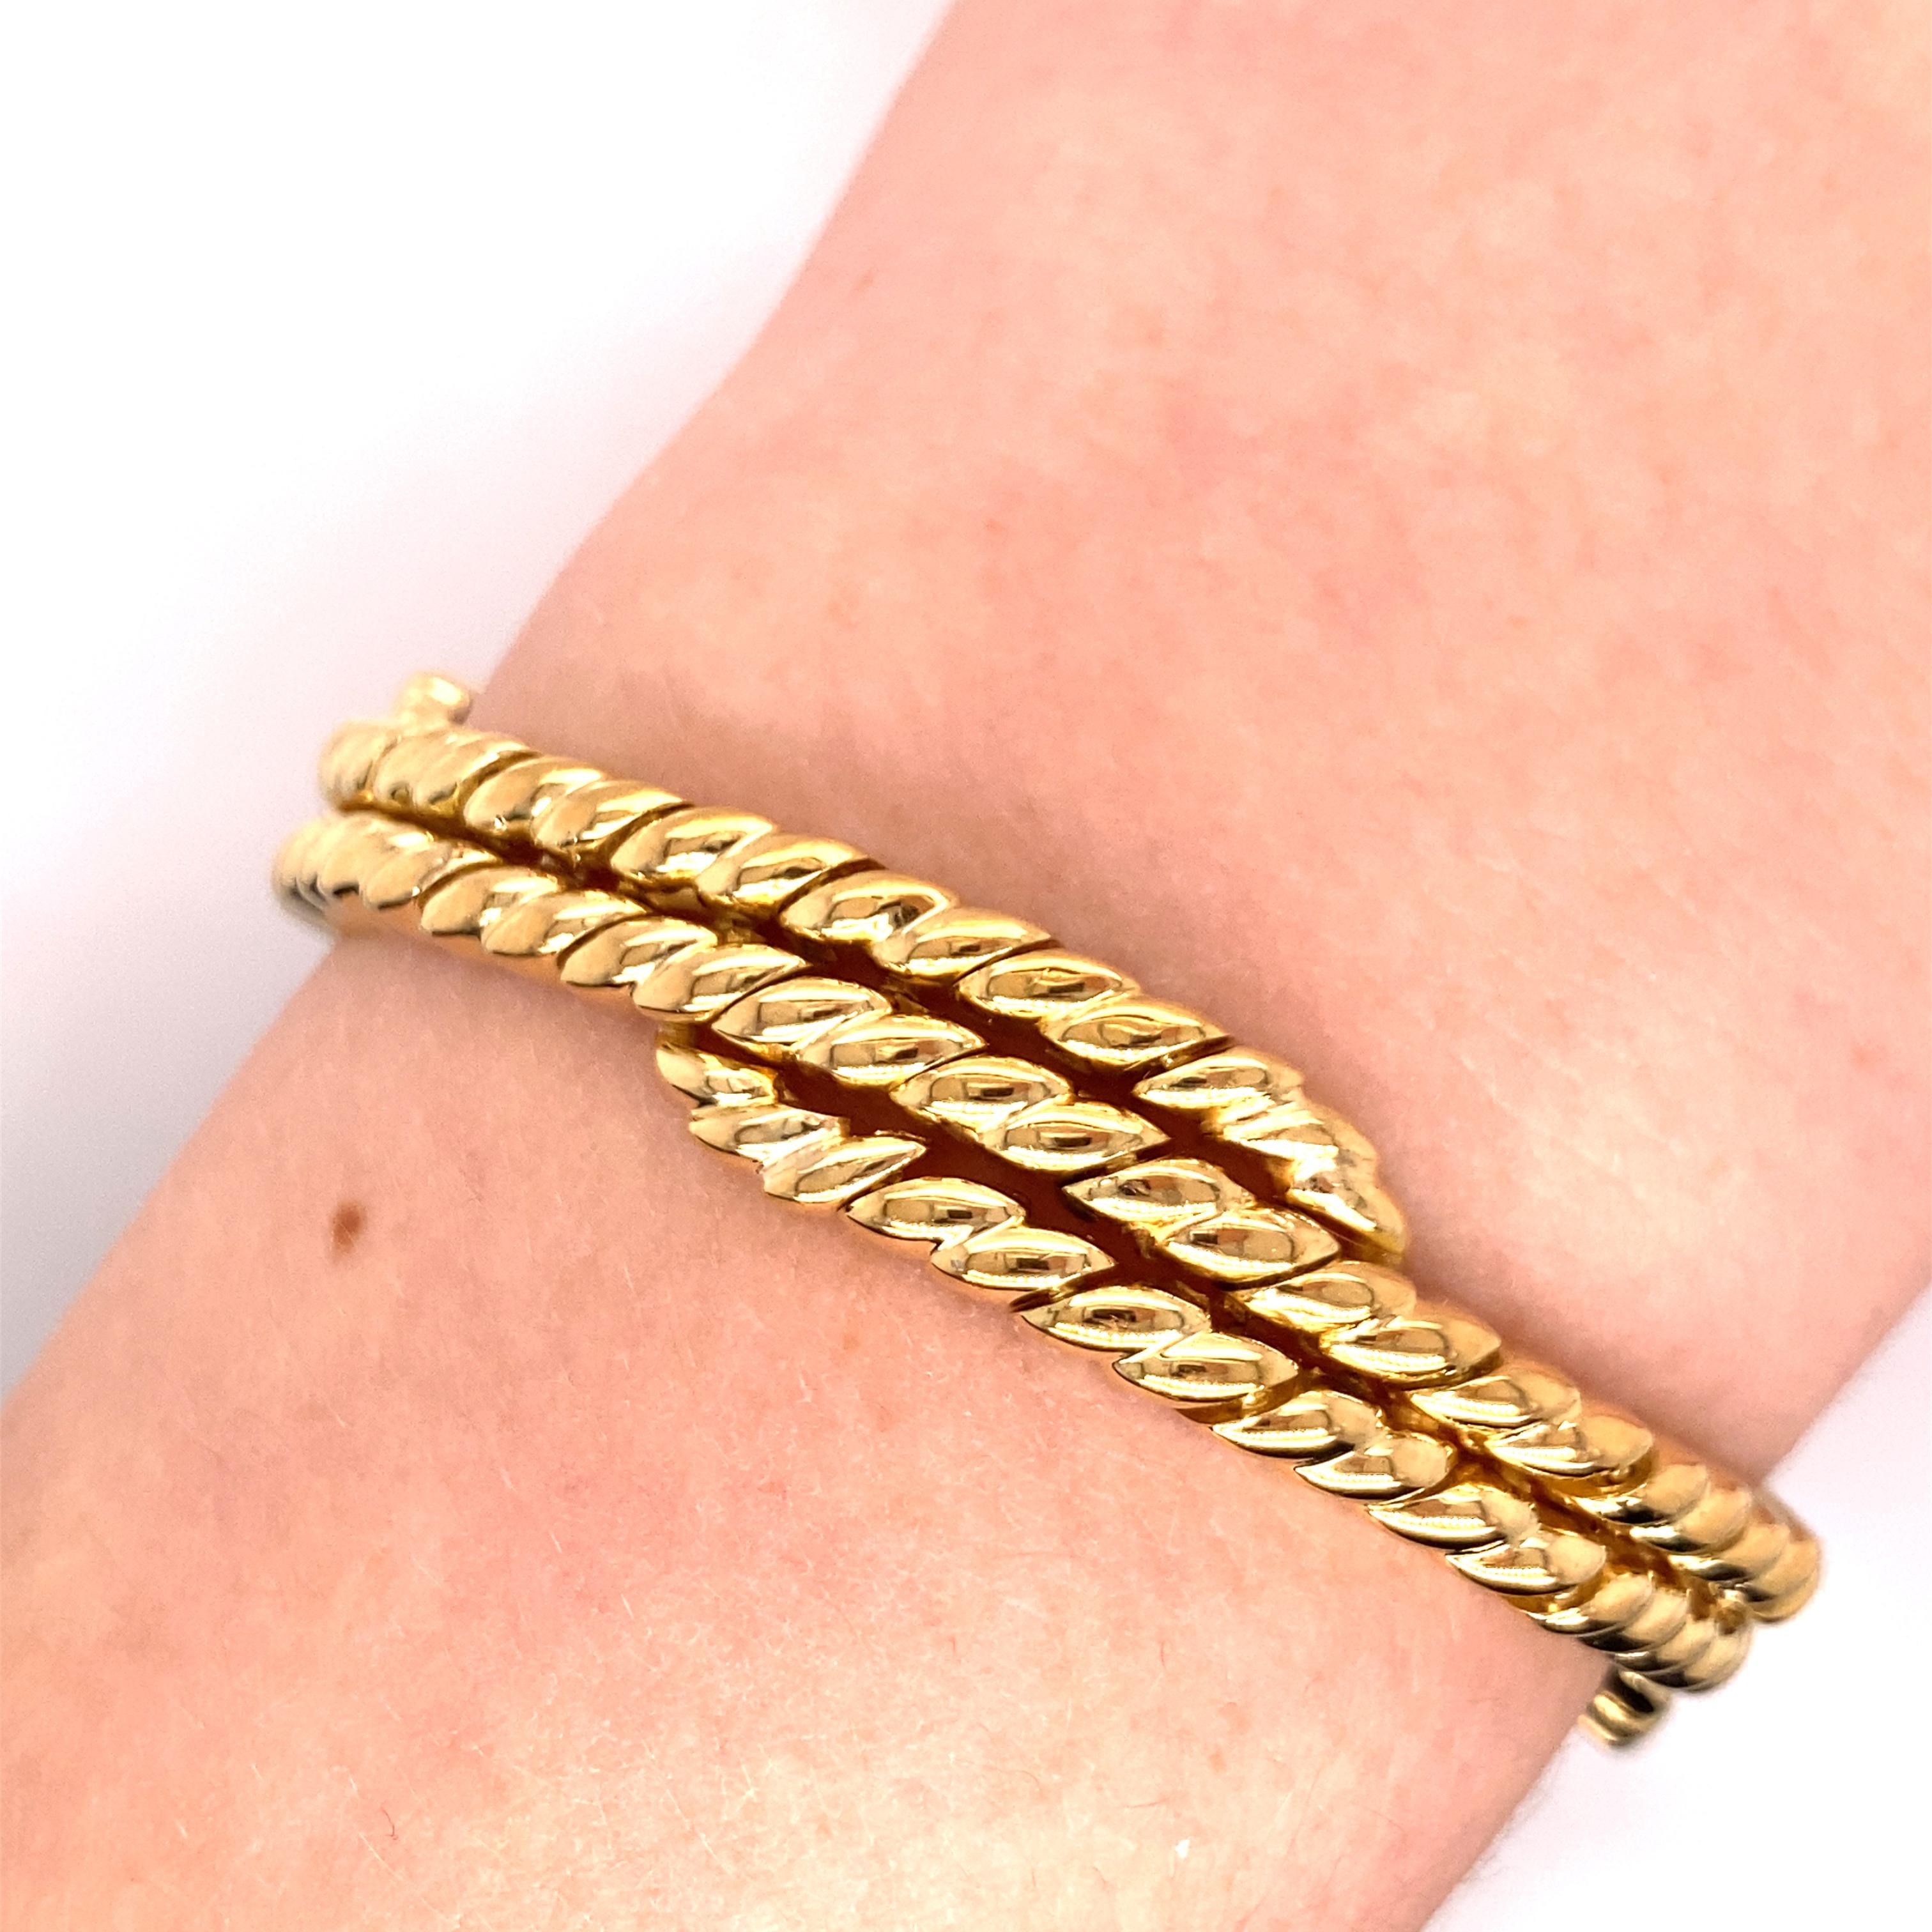 Vintage 1990's 18K Gelbgold 2-3 Row Croissant Link Bracelet - Das Armband besteht aus schweren gegossenen Gliedern und verfügt über eine doppelte breite Plunger Verschluss mit Druckknöpfen auf der Seite. die Länge des Armbandes ist 7,25 cm lang und